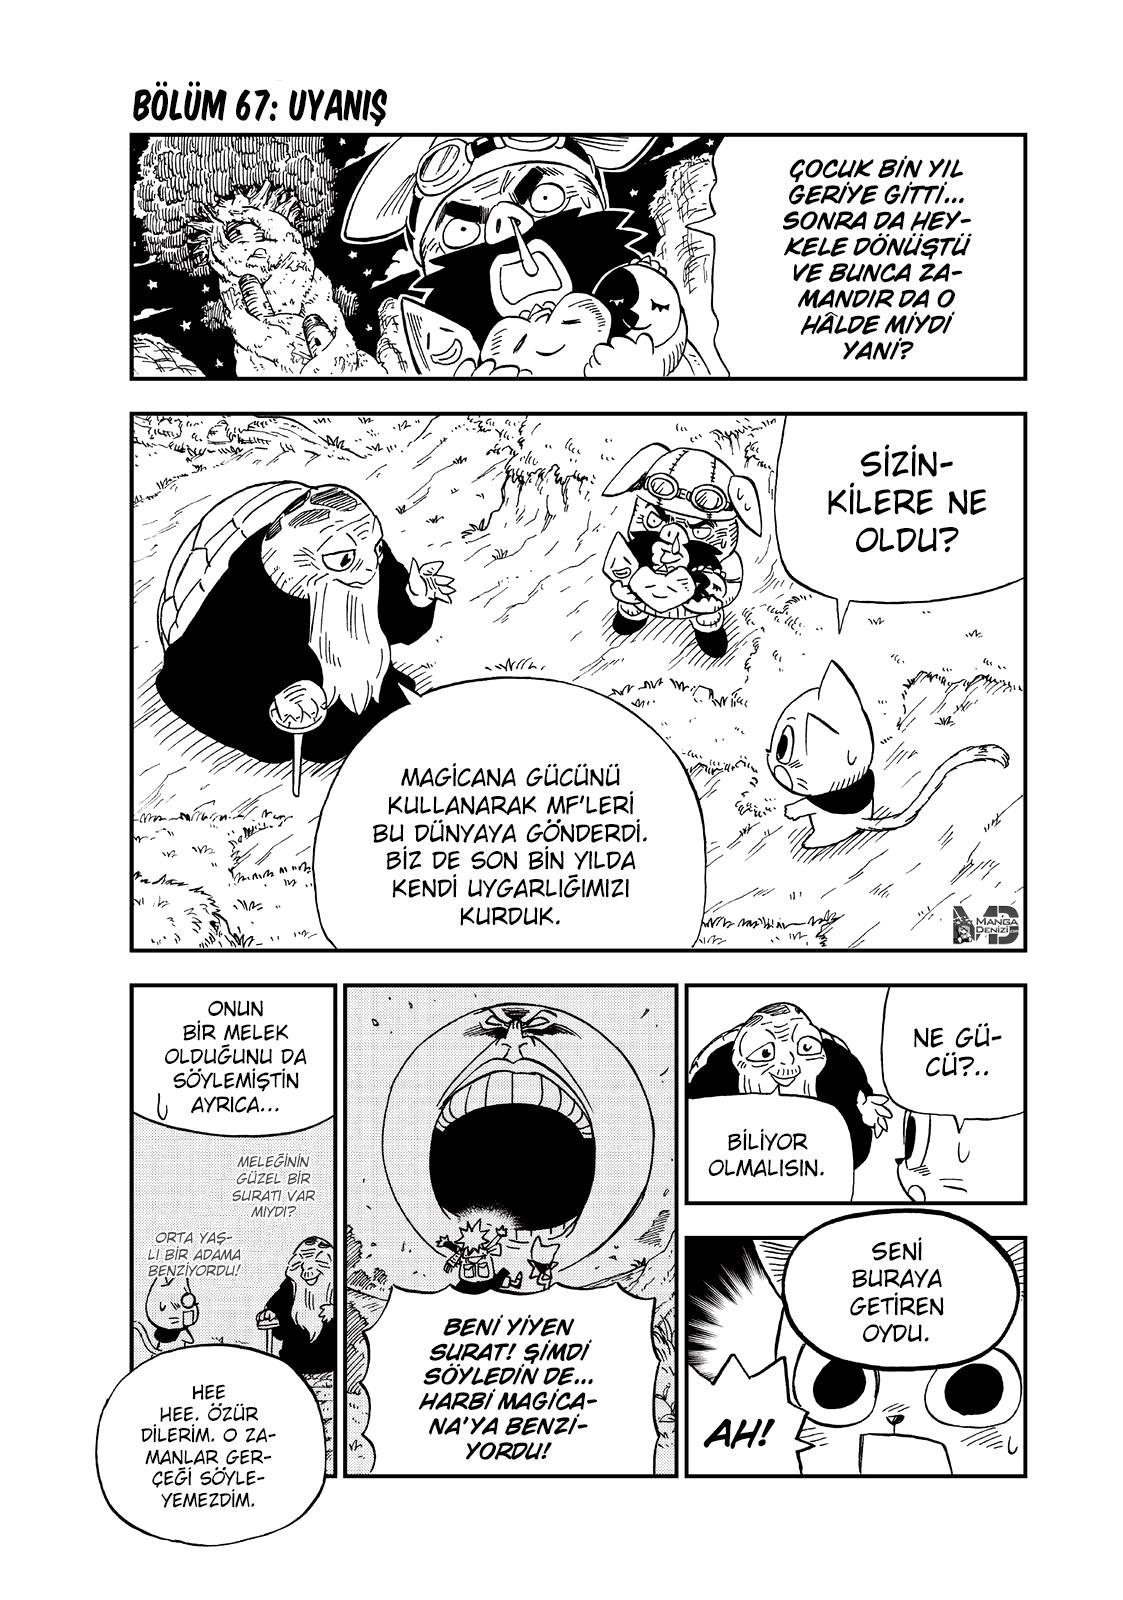 Fairy Tail: Happy's Great Adventure mangasının 67 bölümünün 2. sayfasını okuyorsunuz.